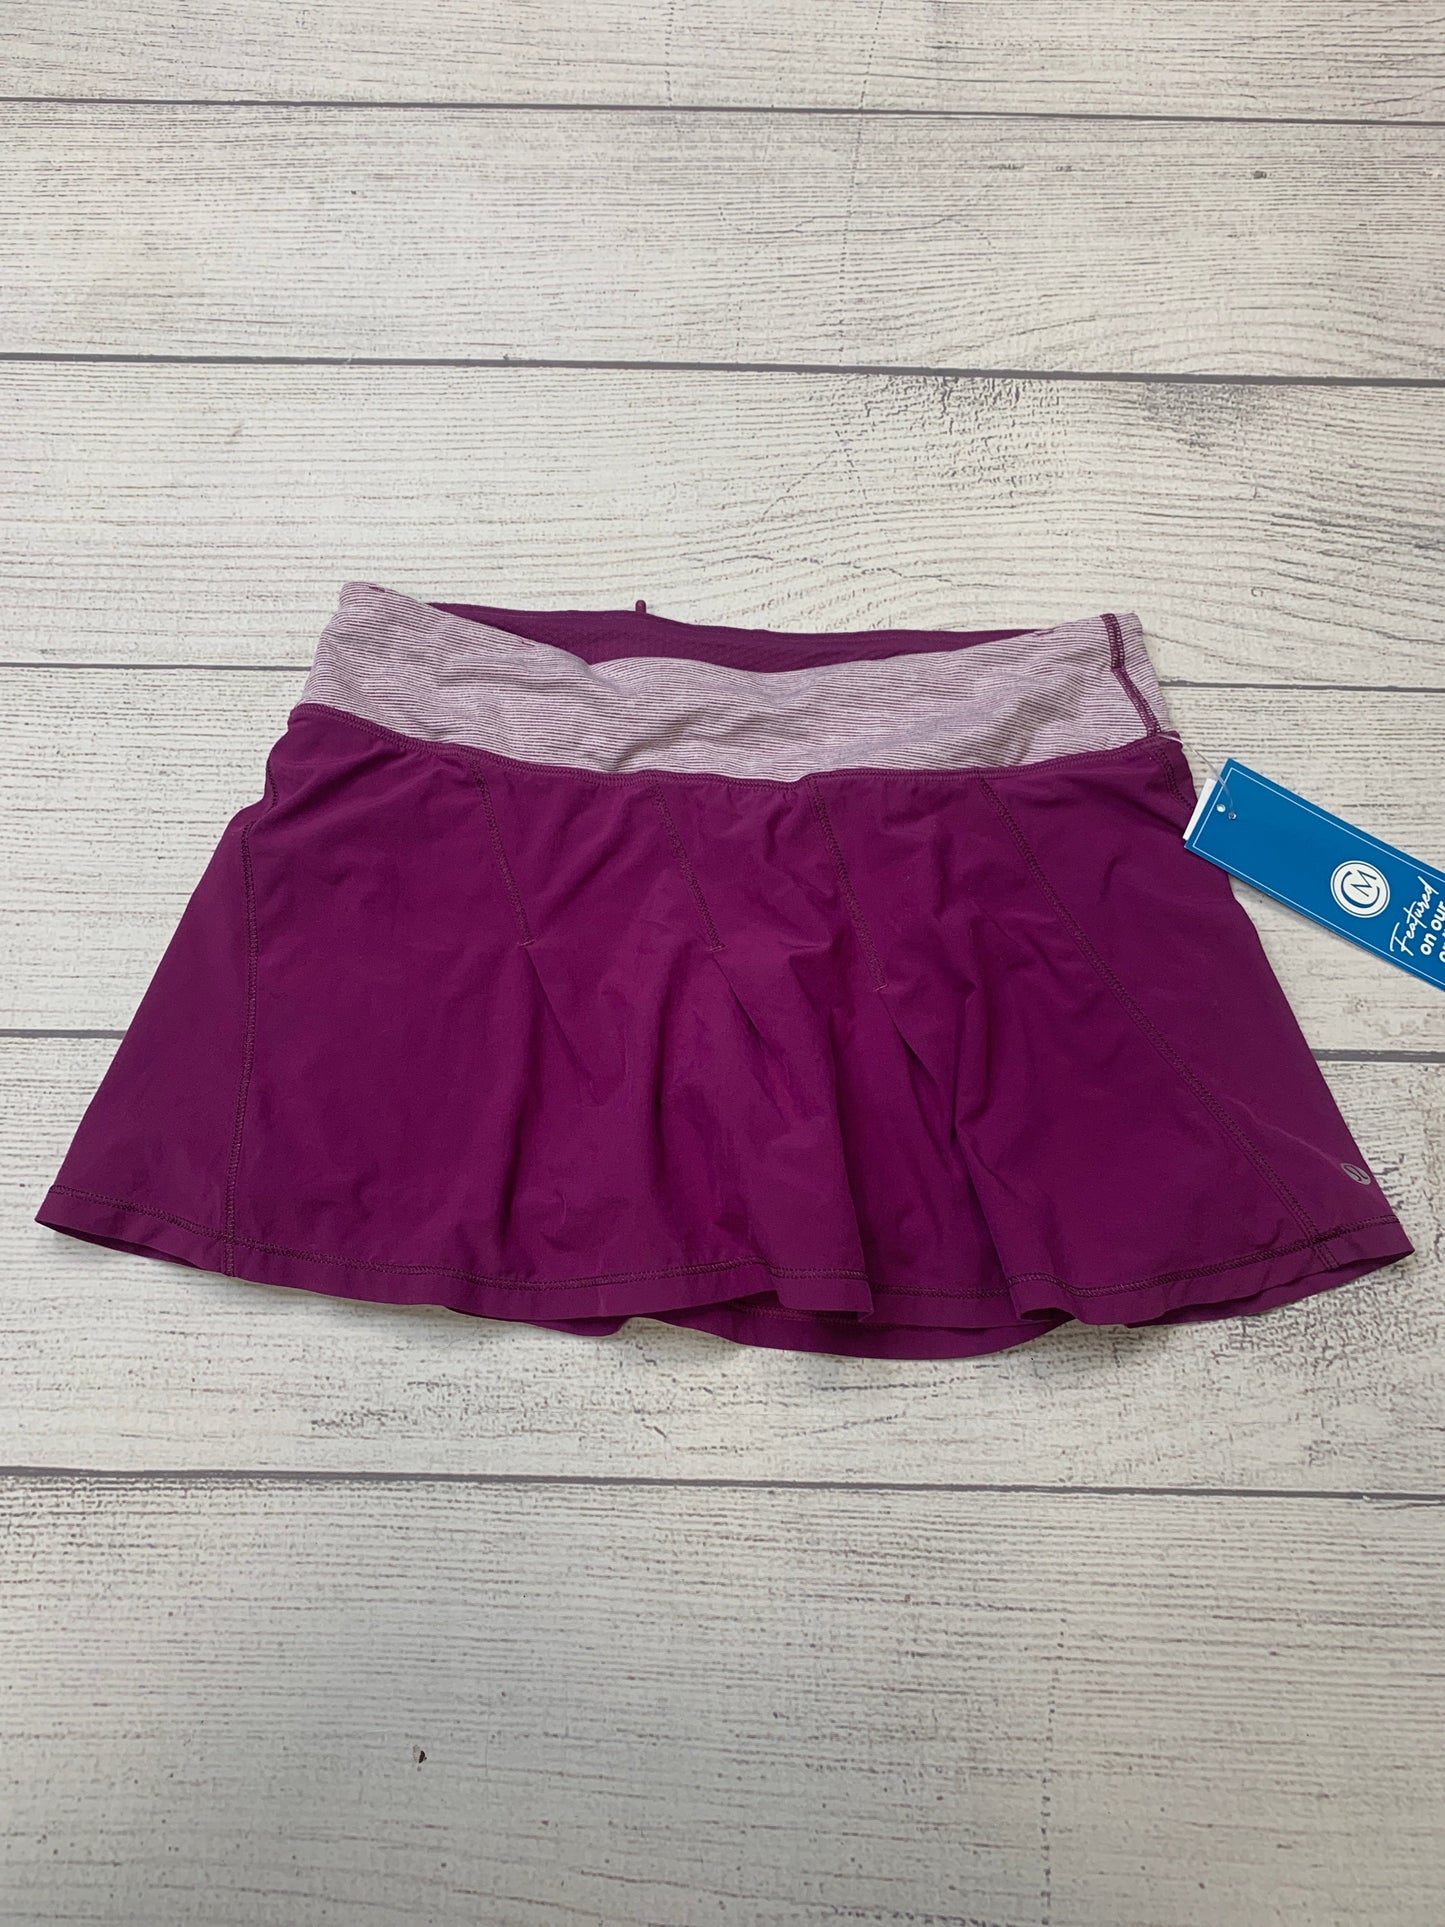 Purple Athletic Skirt Skort Lululemon, Size 6